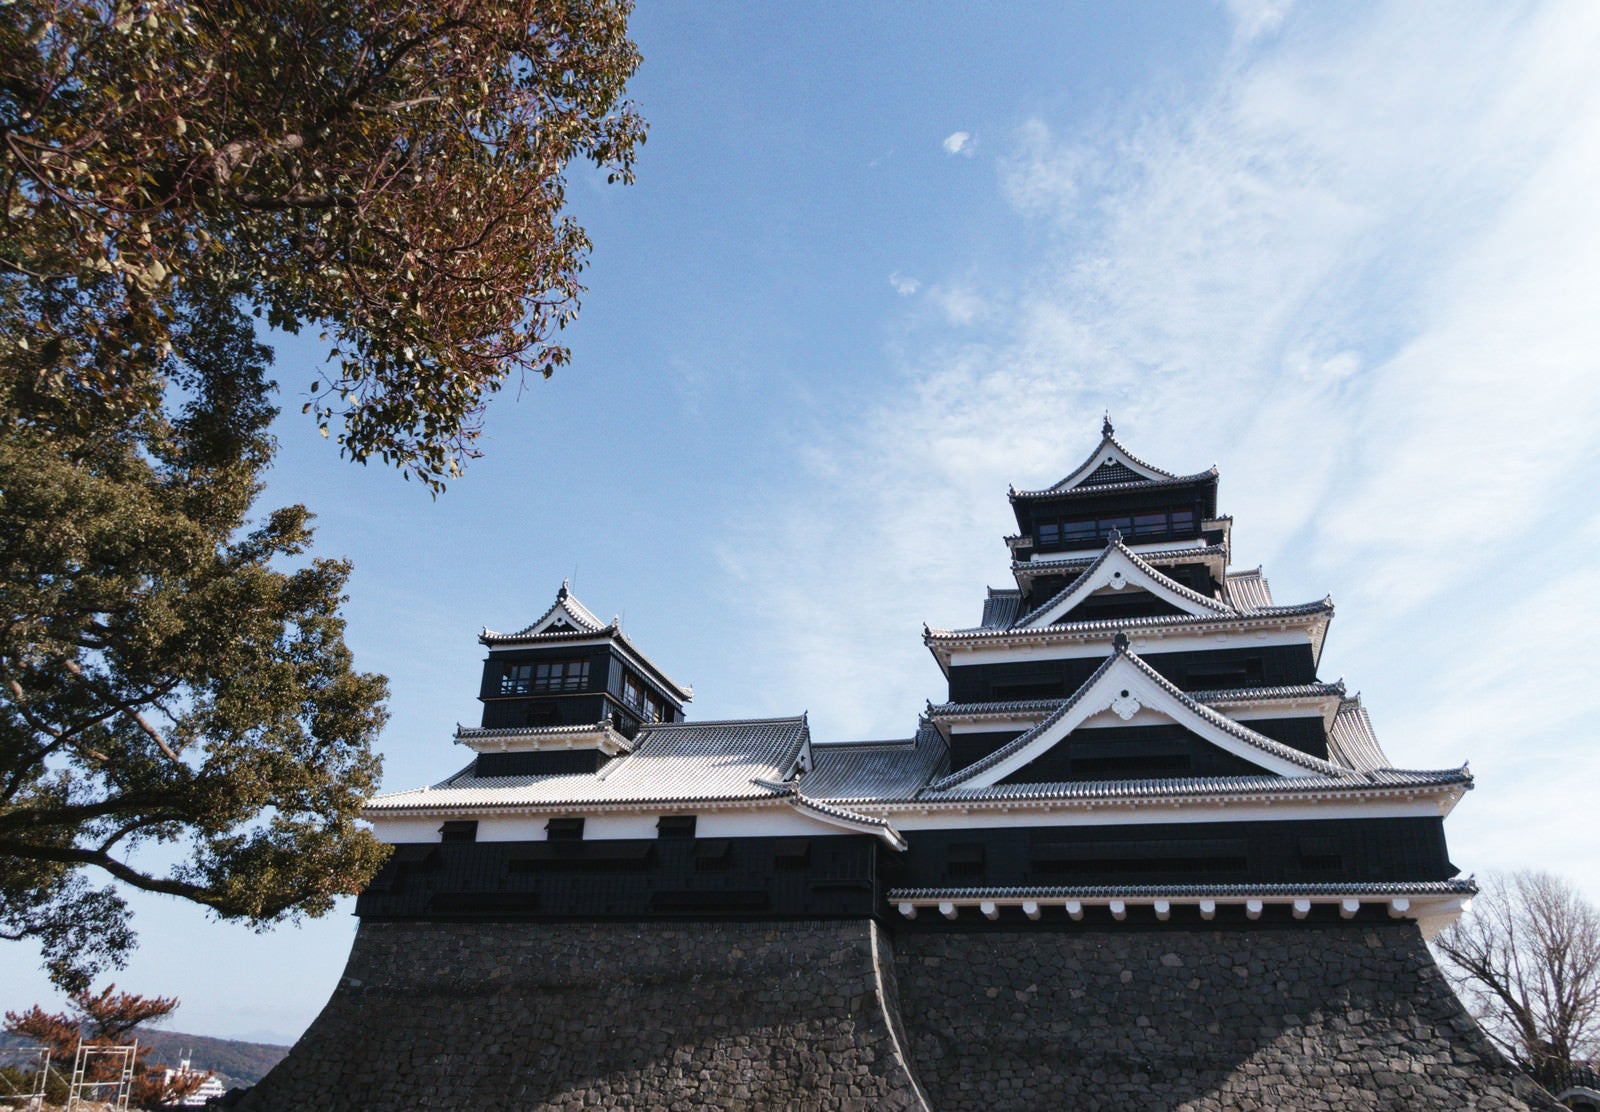 「薄雲の青空と熊本城」の写真